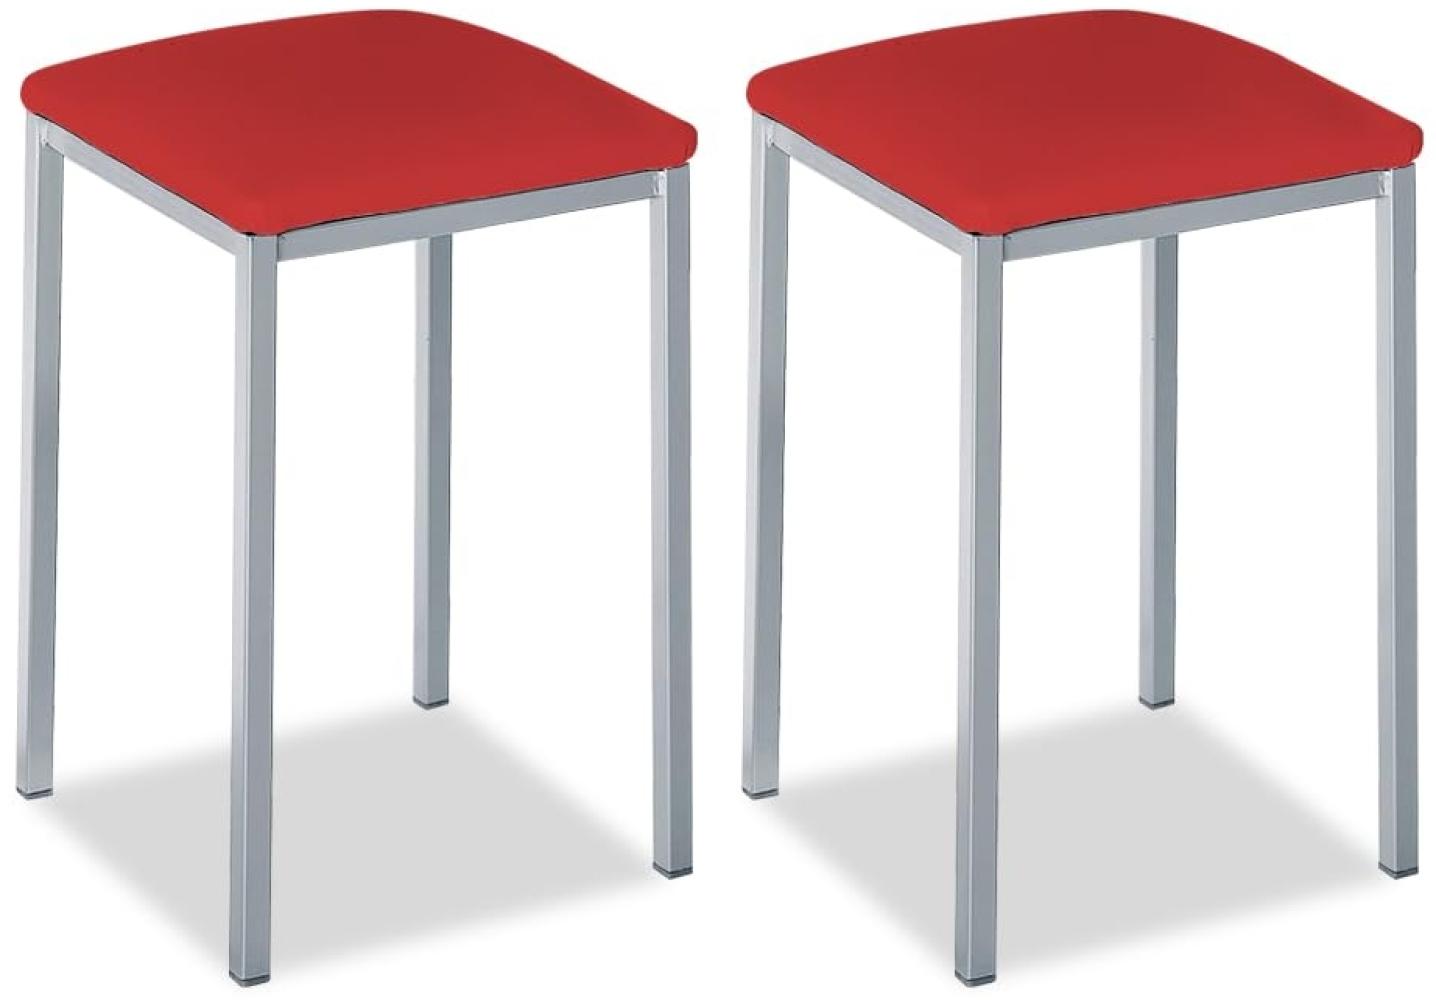 ASTIMESA - Gepolsterter Küchenhocker - Solide und Feste Struktur - Gestell Farbe Aluminium und Sitzfläche aus Kunstleder - Sitzfarbe: Rot. Lieferumfang: 2 Stück, Maße: 35 x 35 x 45 cm Bild 1